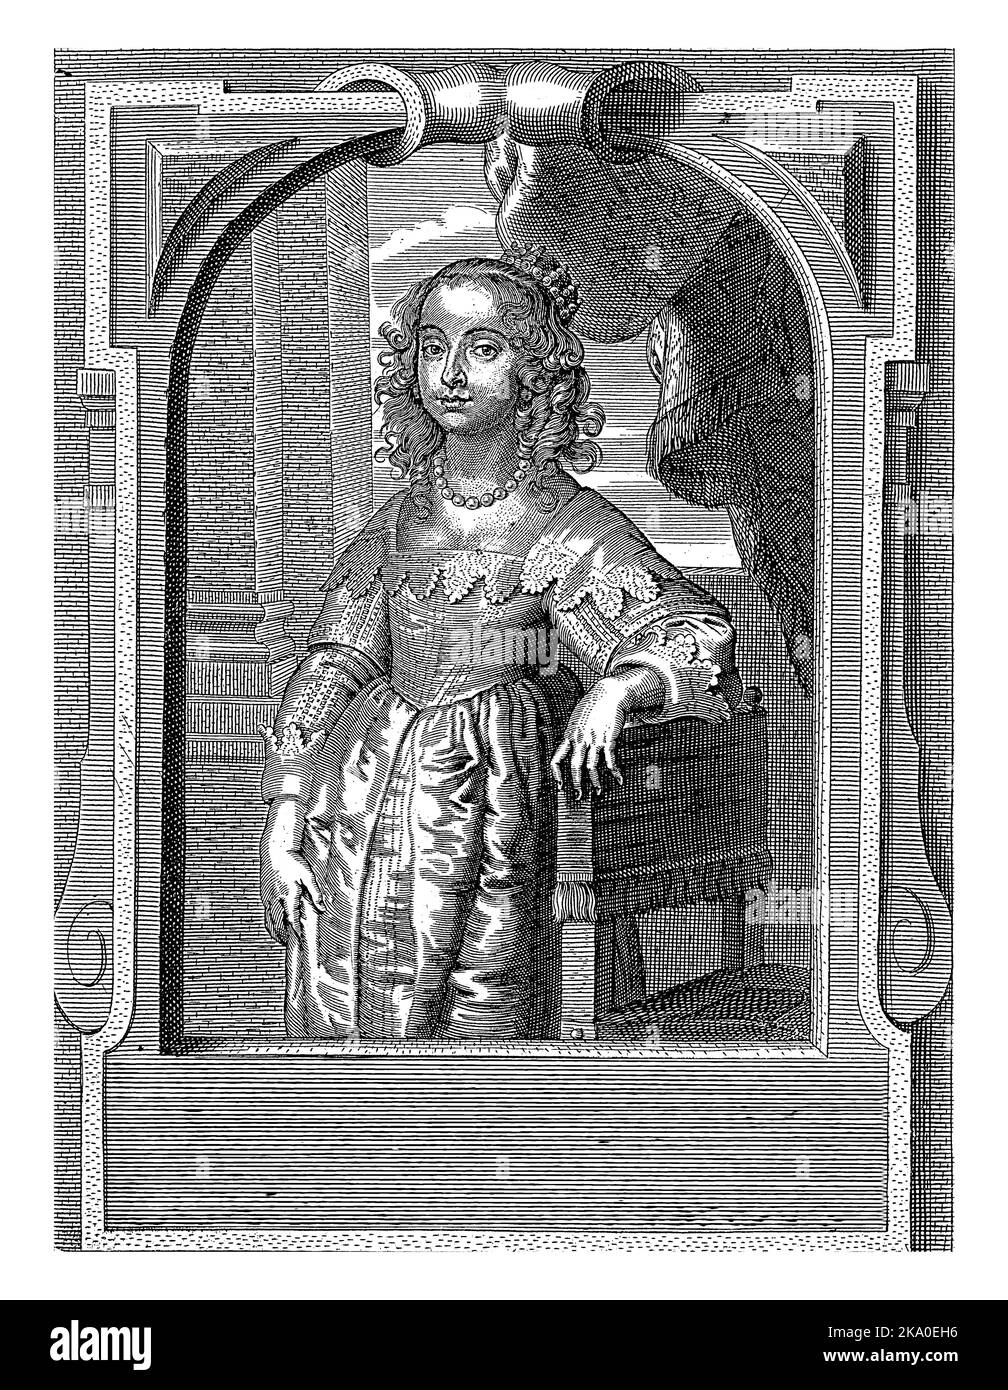 Porträt von Maria Henrietta Stuart, Pieter de Jode (II), nach Anthony van Dyck, c. 1628 - c. 1670 Porträt von Maria Henrietta unter einer verzierten Theke Stockfoto